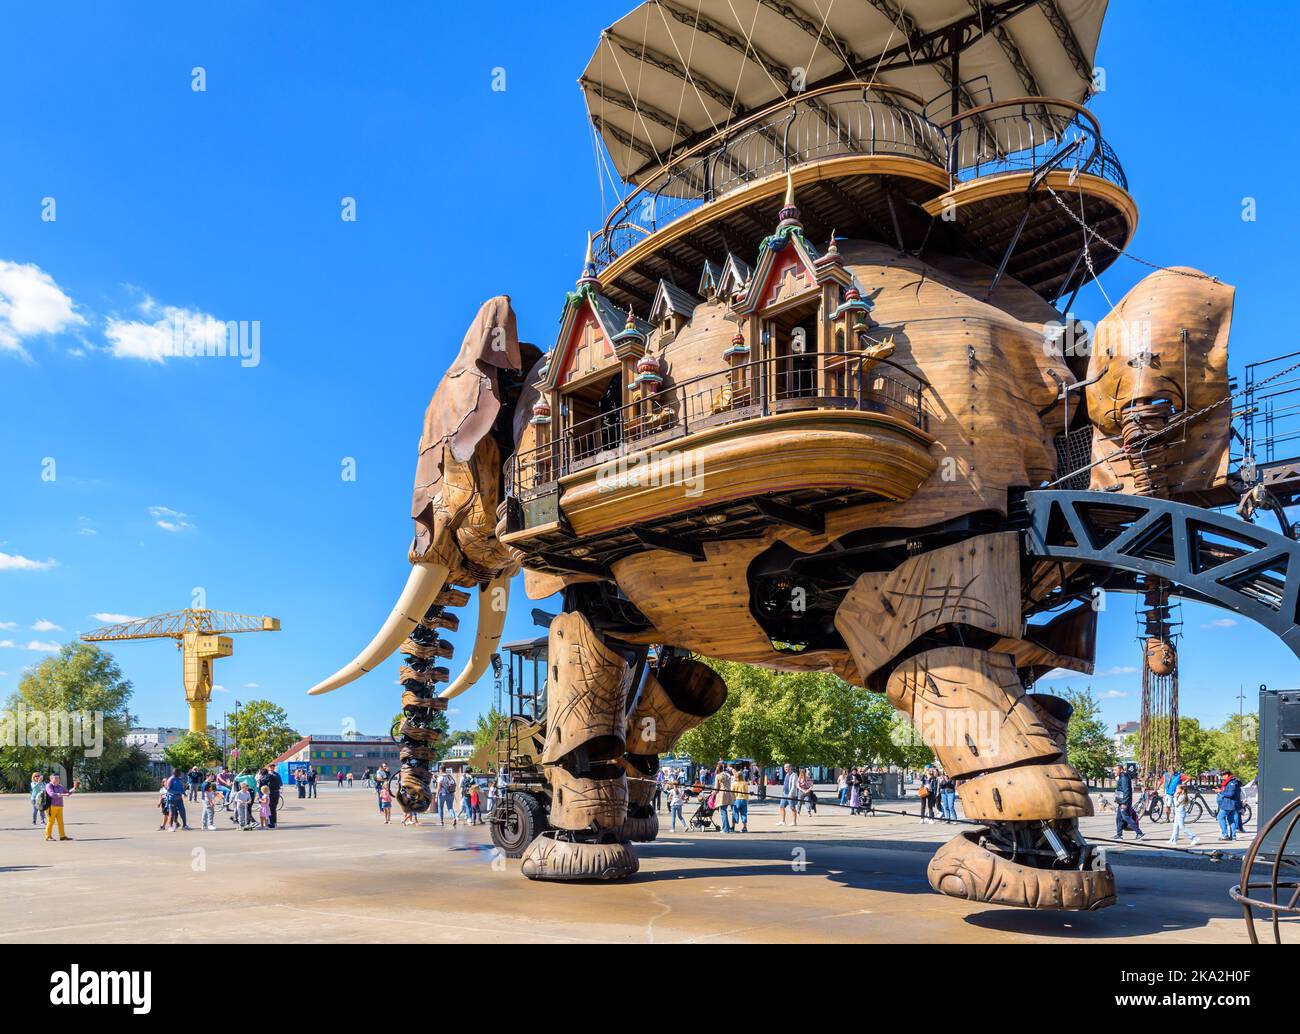 Die riesige Elefantenpuppe, Teil der Maschinen der Attraktion der Insel Nantes, mit dem gelben Titan-Kran in der Ferne. Stockfoto